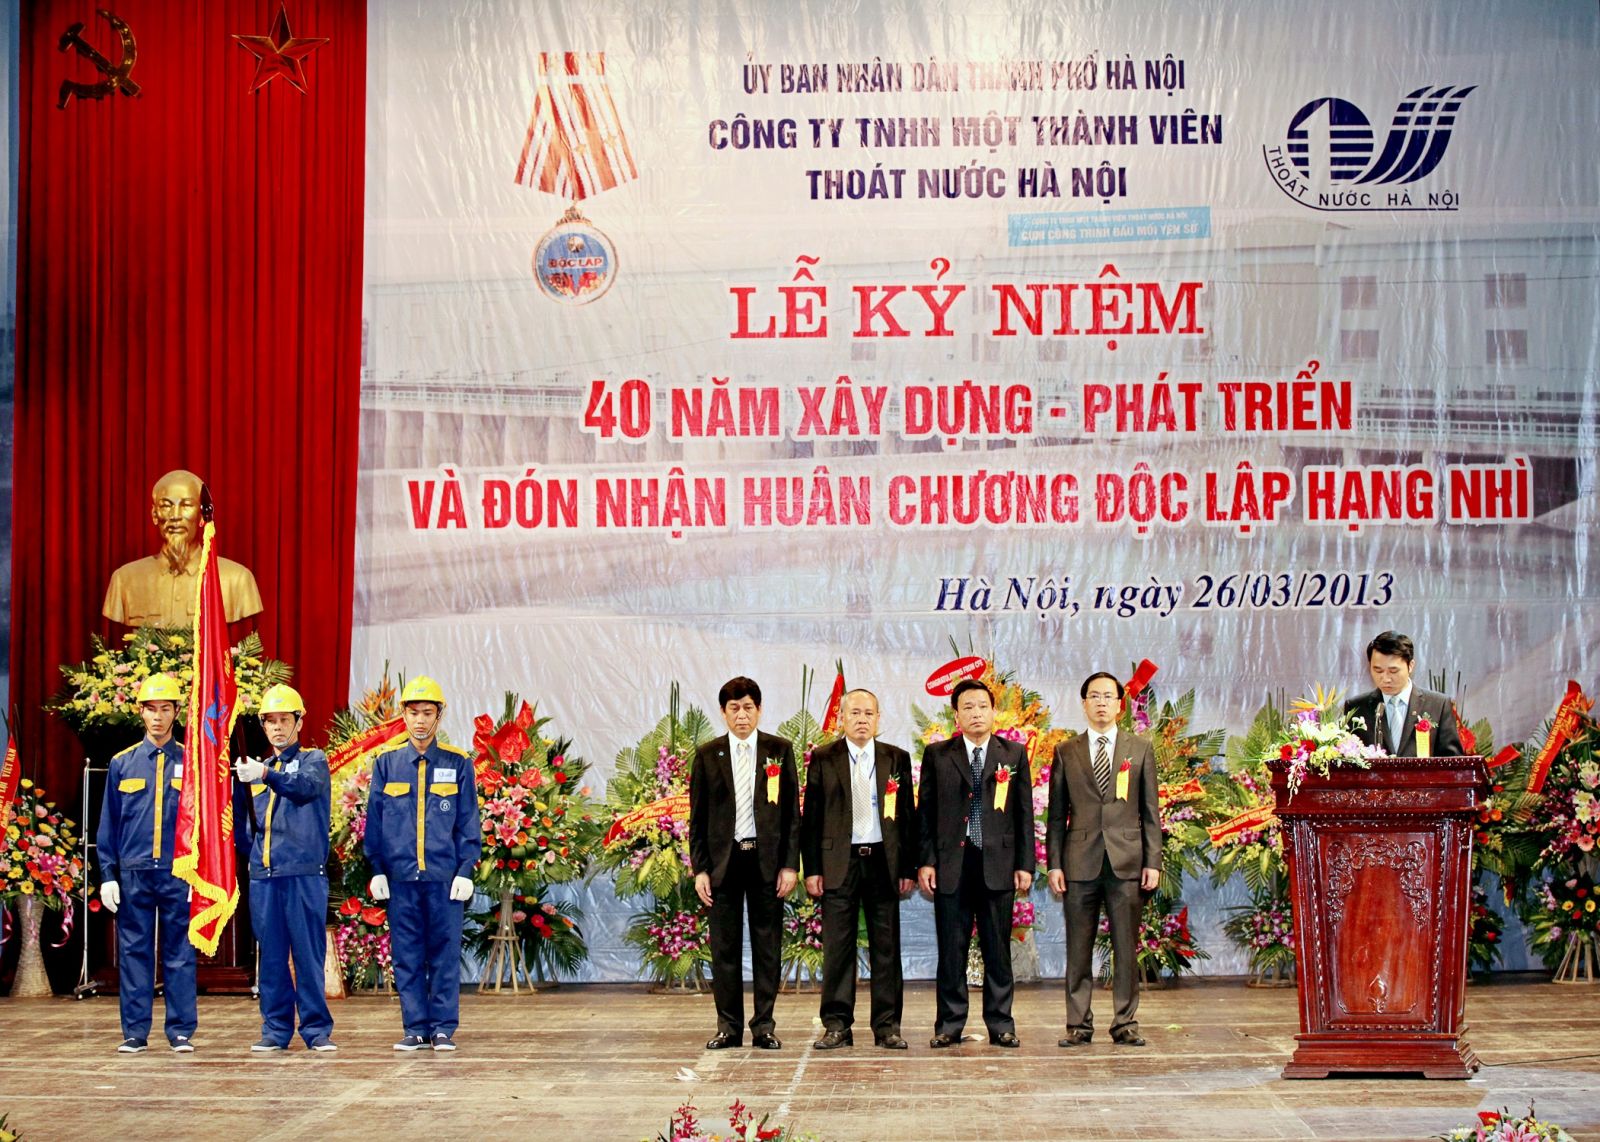 2816/Công ty TNHH MTV Thoát nước Hà Nội tổ chức lễ kỷ niệm 50 năm ngày thành lập